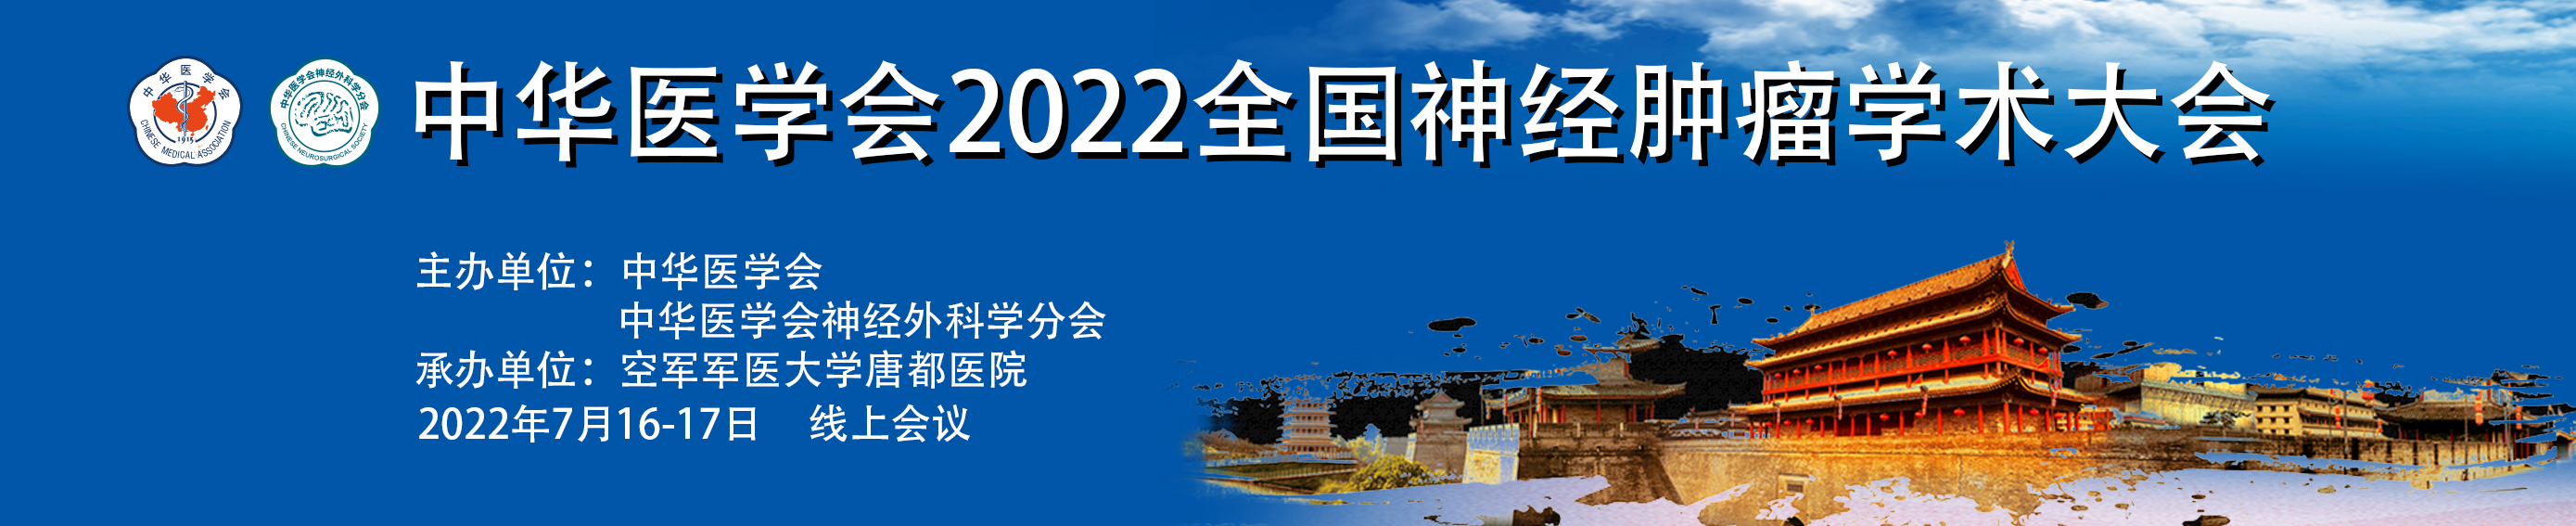 中华医学会2022全国神经肿瘤学术大会